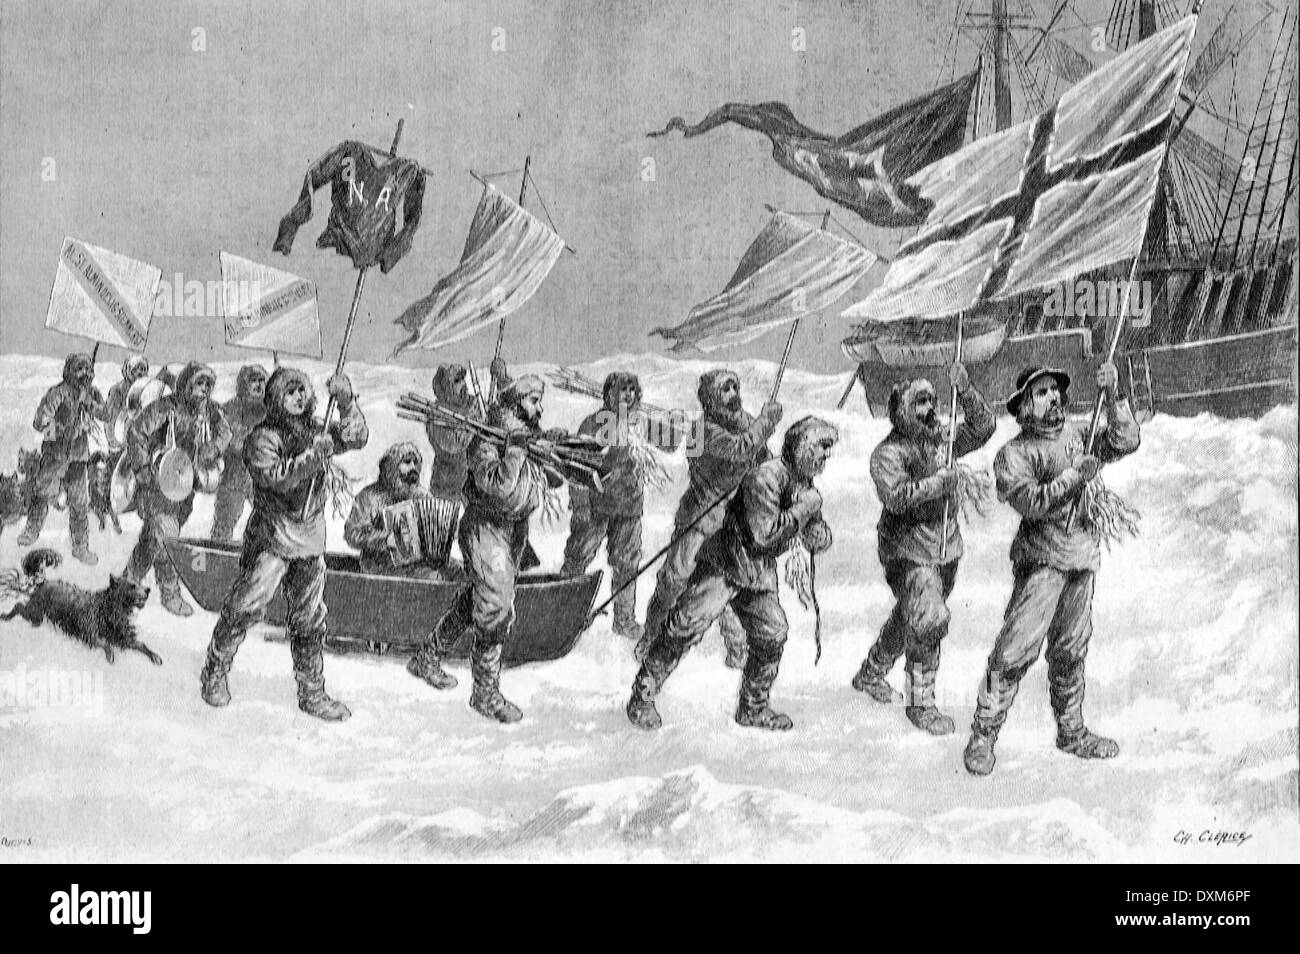 L'explorateur norvégien Fridtjof Nansen sur Pack-Ice arctique lors de son expédition au pôle Nord 1893-1988 Illustration de 1897 Banque D'Images